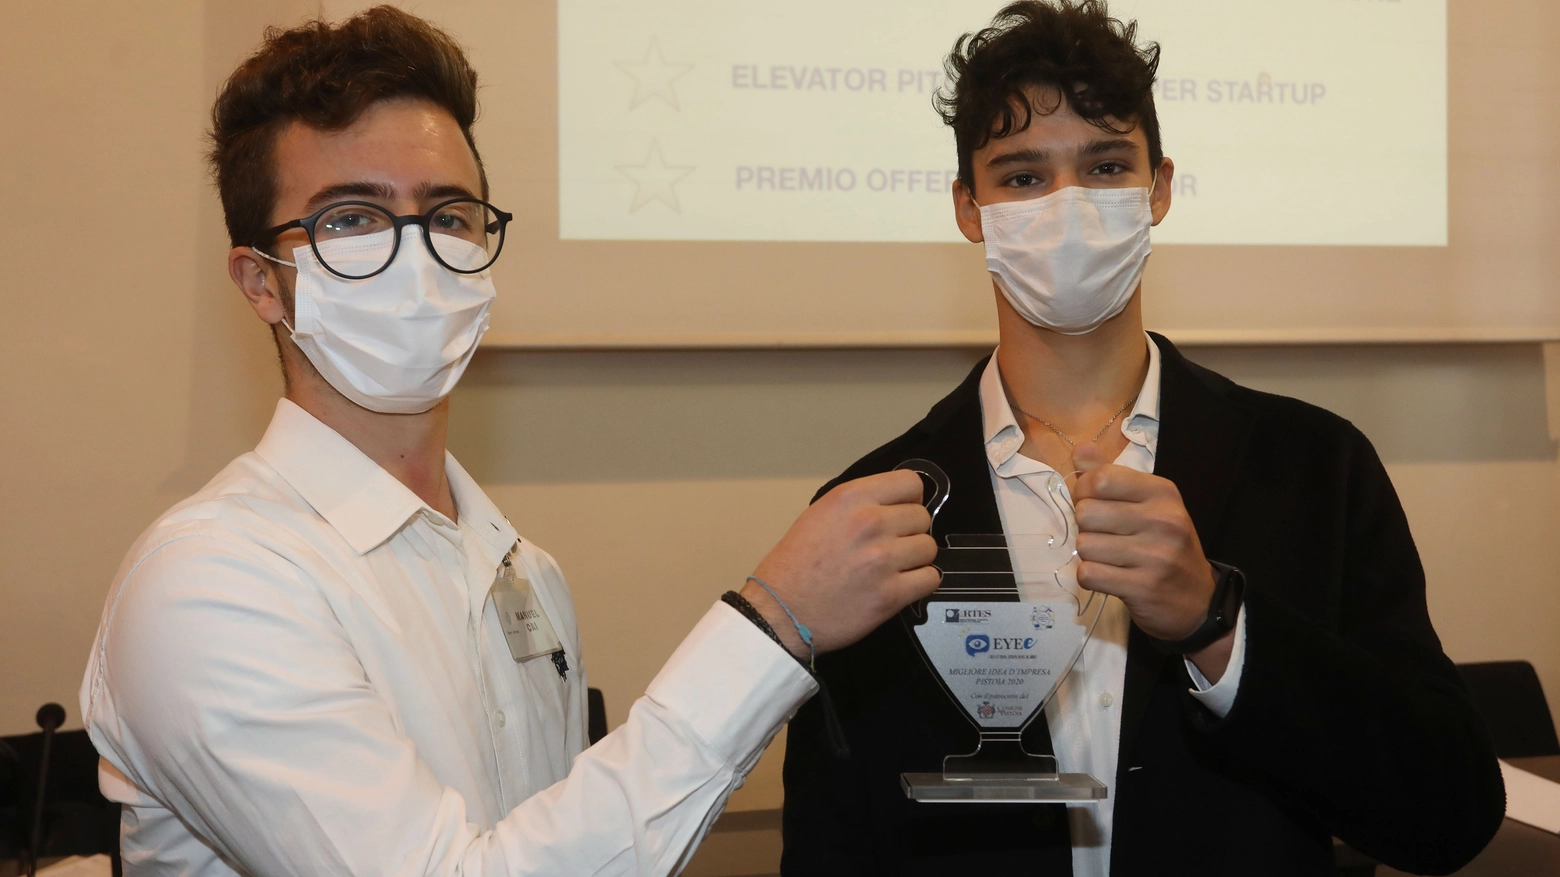 I 18 enni Manuele Cai e Stefano Zambon, vincitori del Trofeo Eye 2020 Pistoia